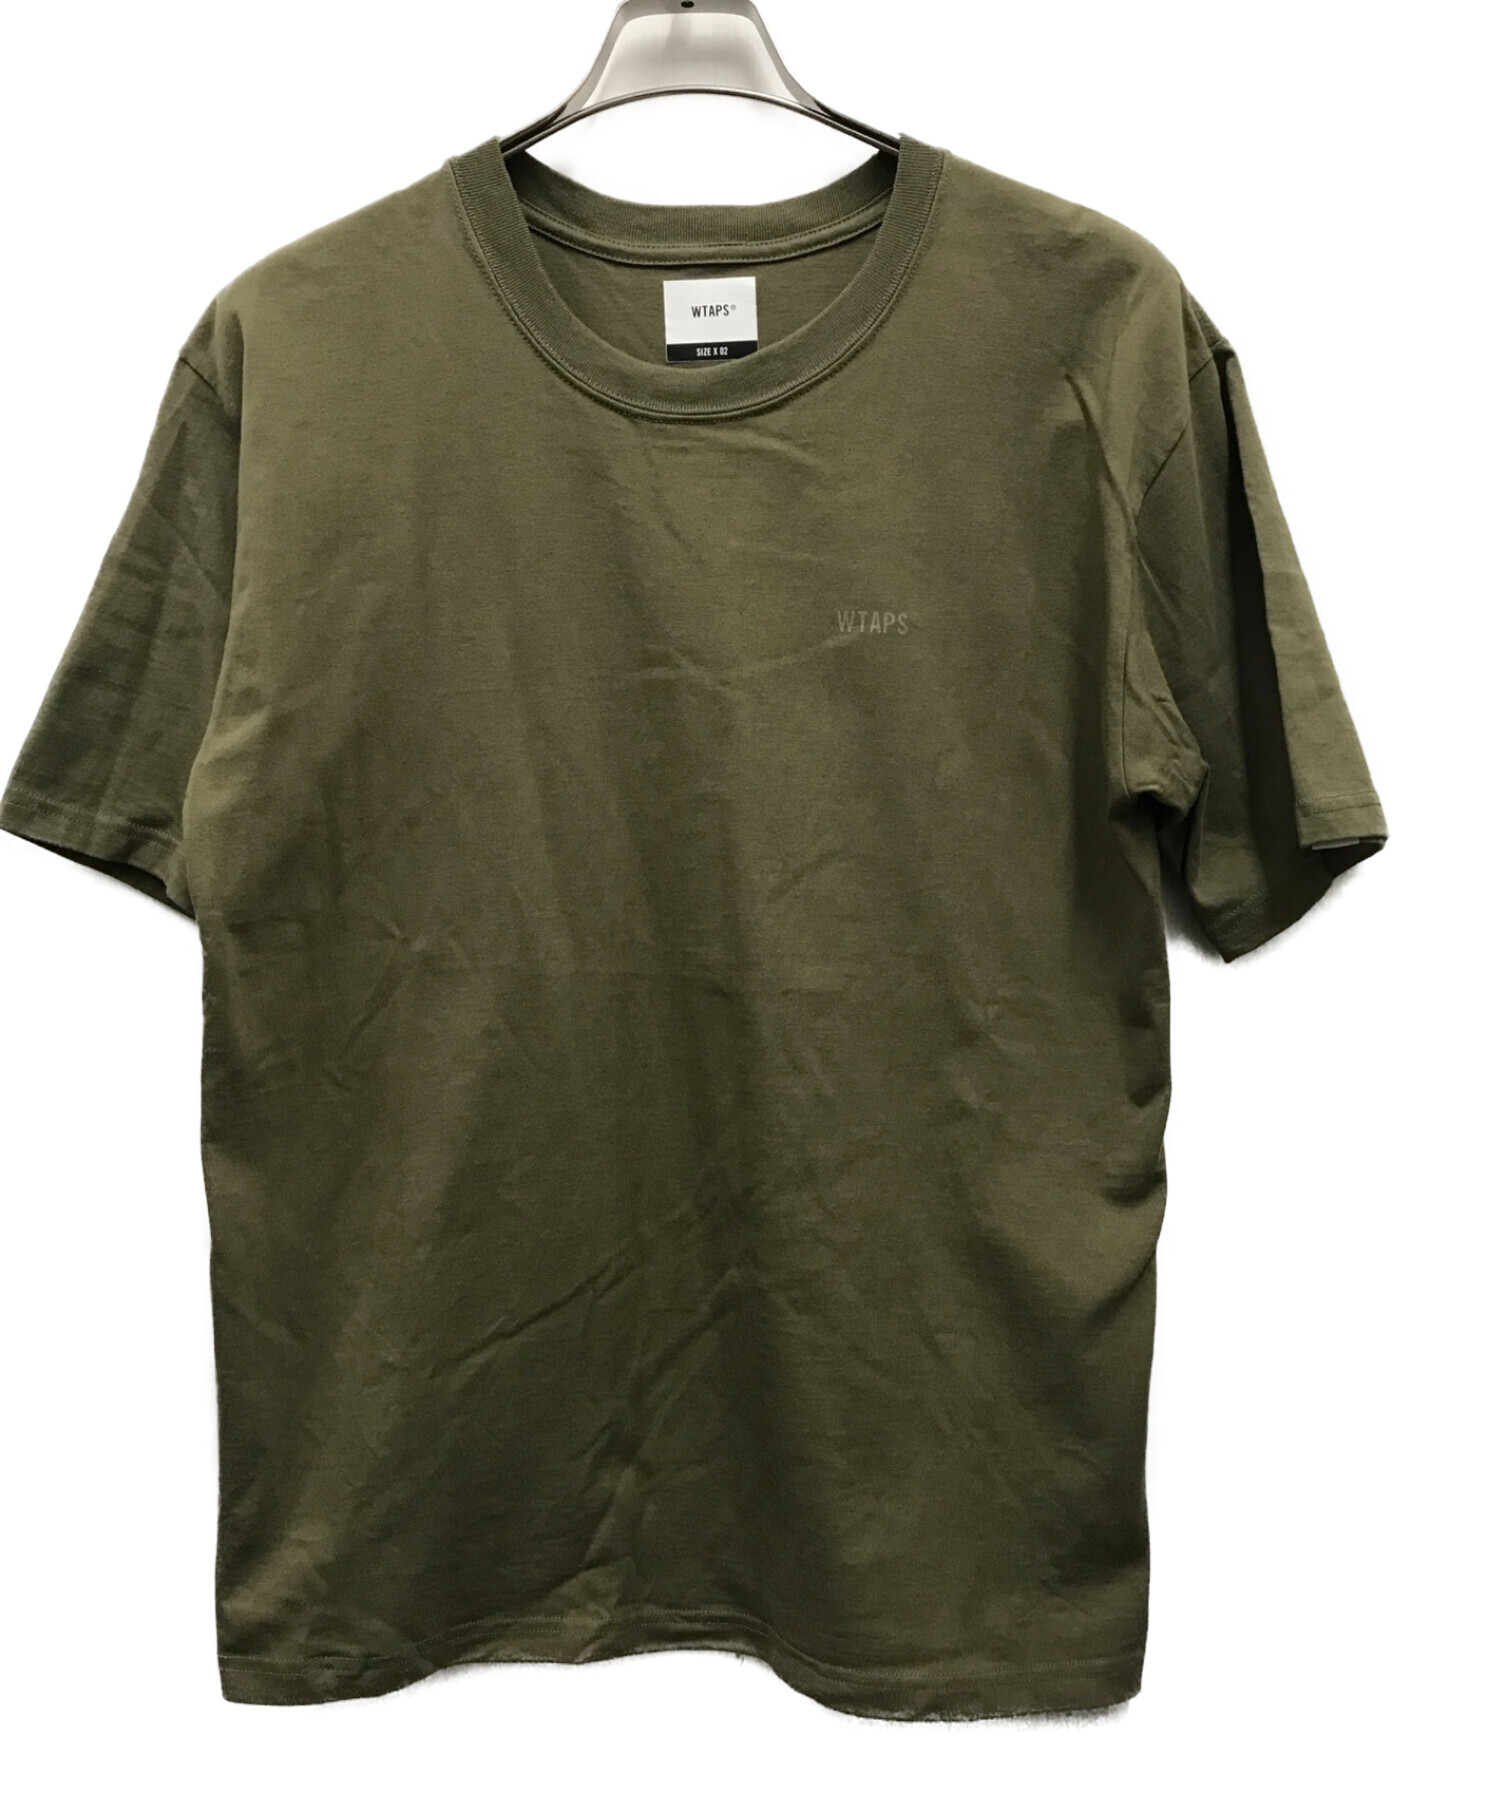 Wtaps olive tshirts size 02